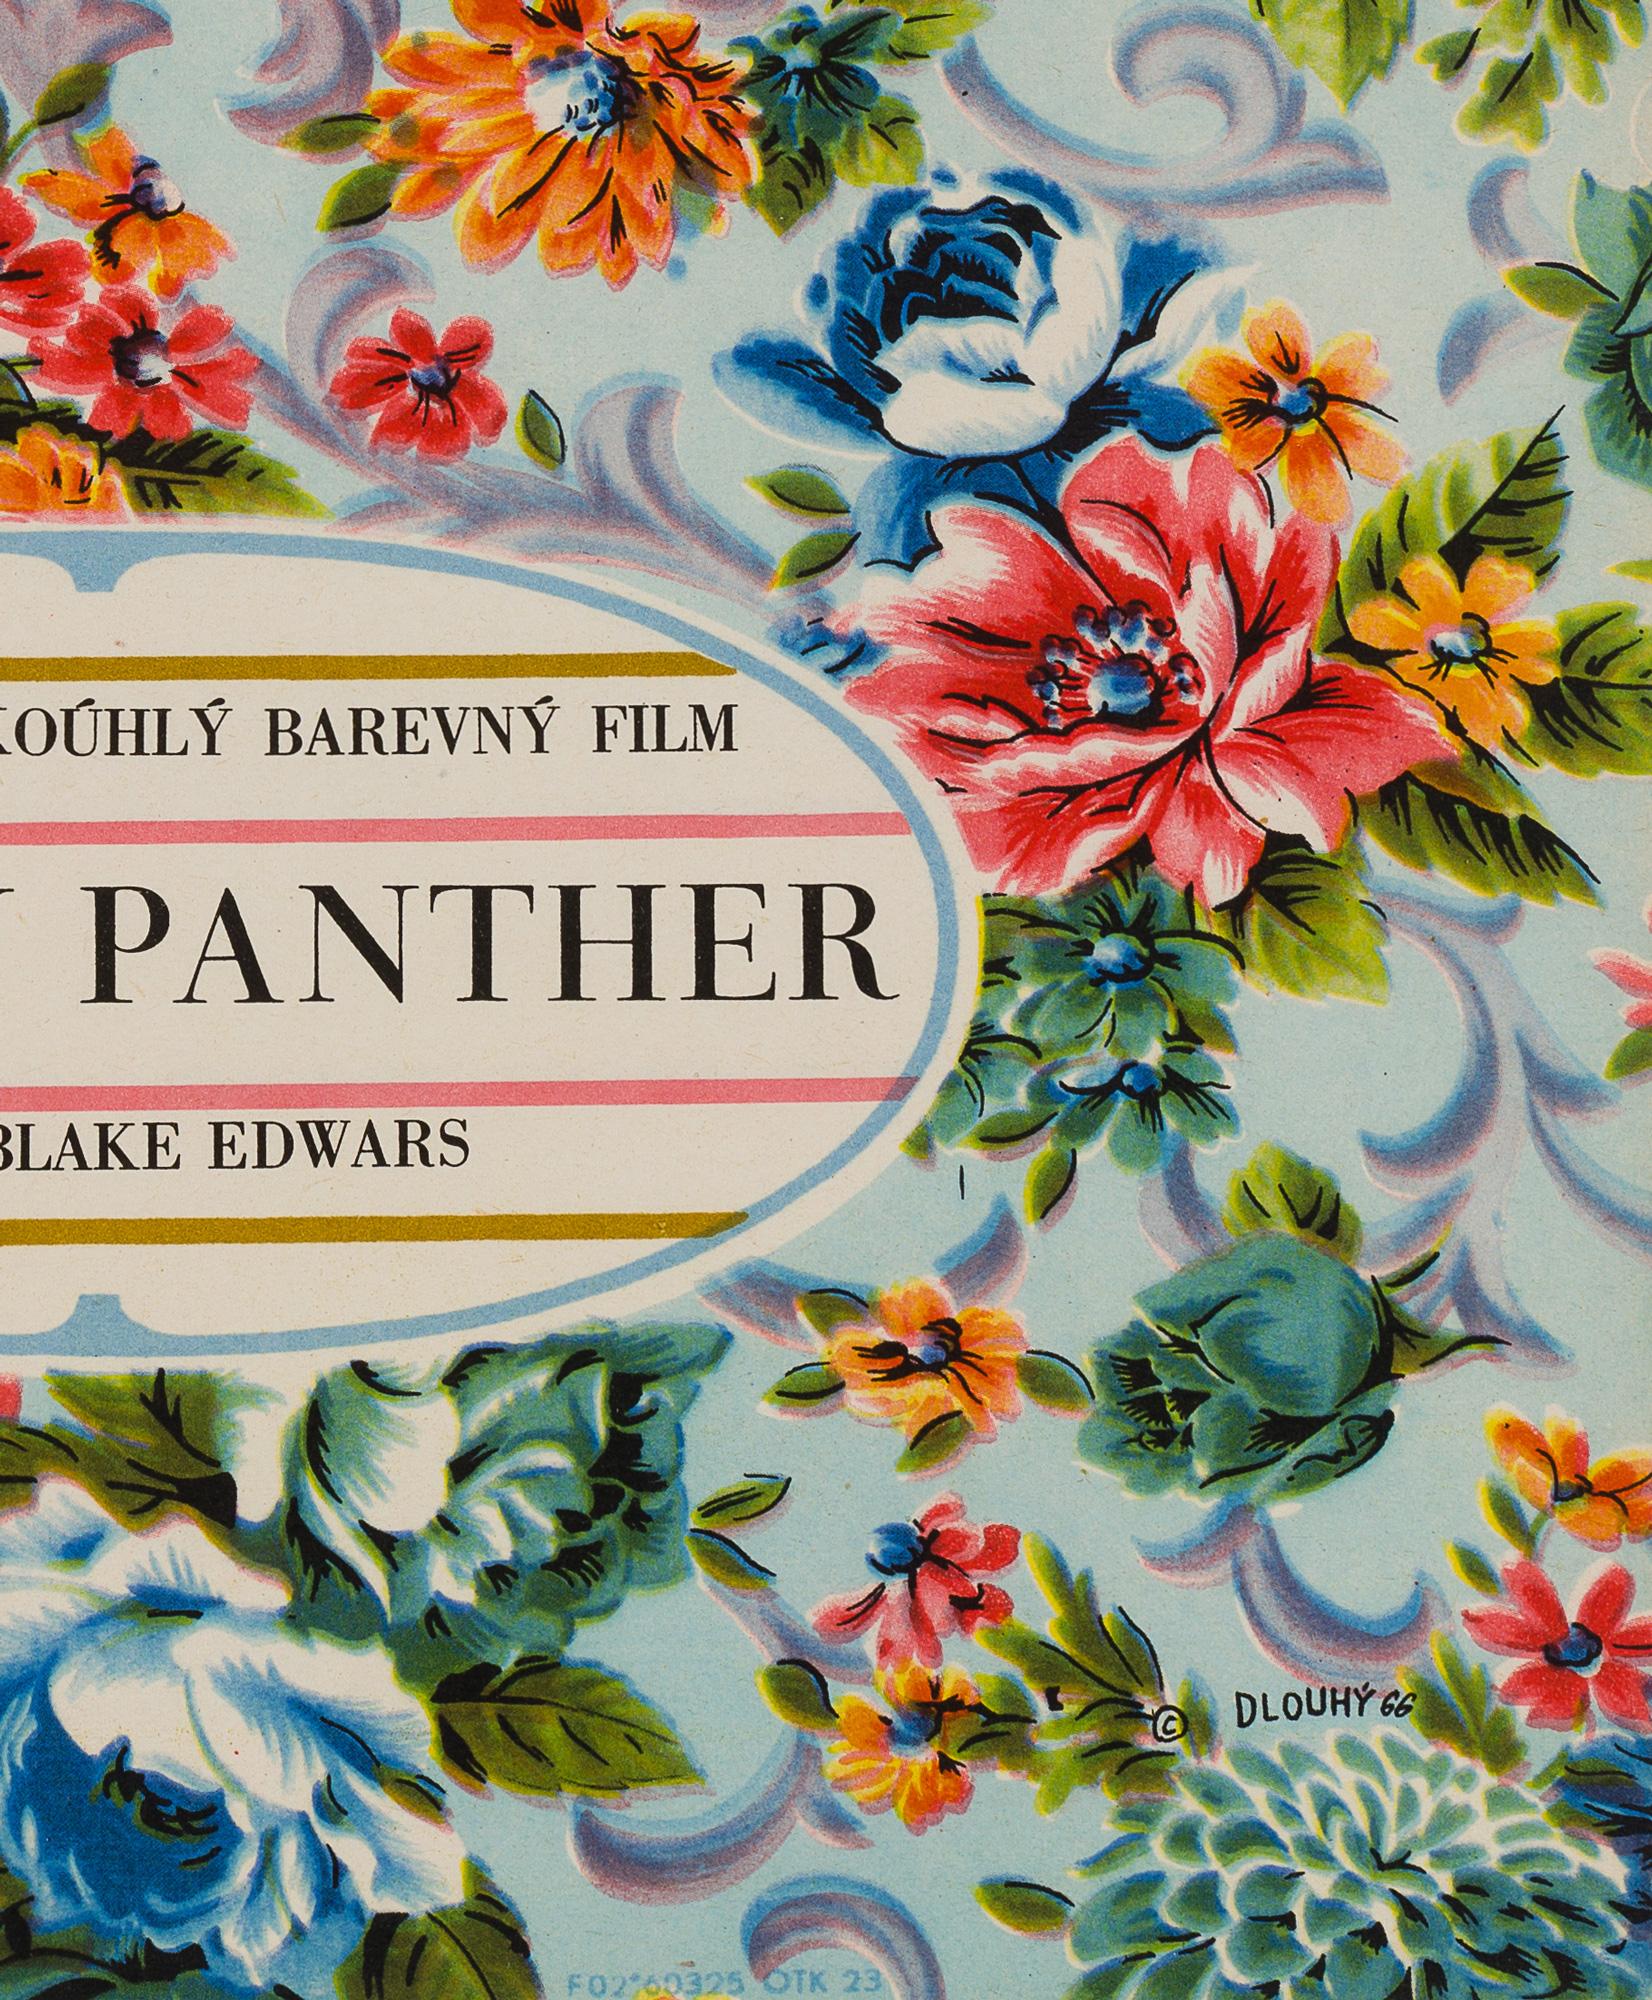 Äußerst originelles Design von Dlouhý für die alte tschechische Ausgabe von Peter Sellers' Filmklassiker The Pink Panther. Ein schönes, sehr seltenes Filmplakat.

Die tatsächliche Postergröße beträgt 11 1/4 x 16 Zoll. Aufgerollt in nahezu